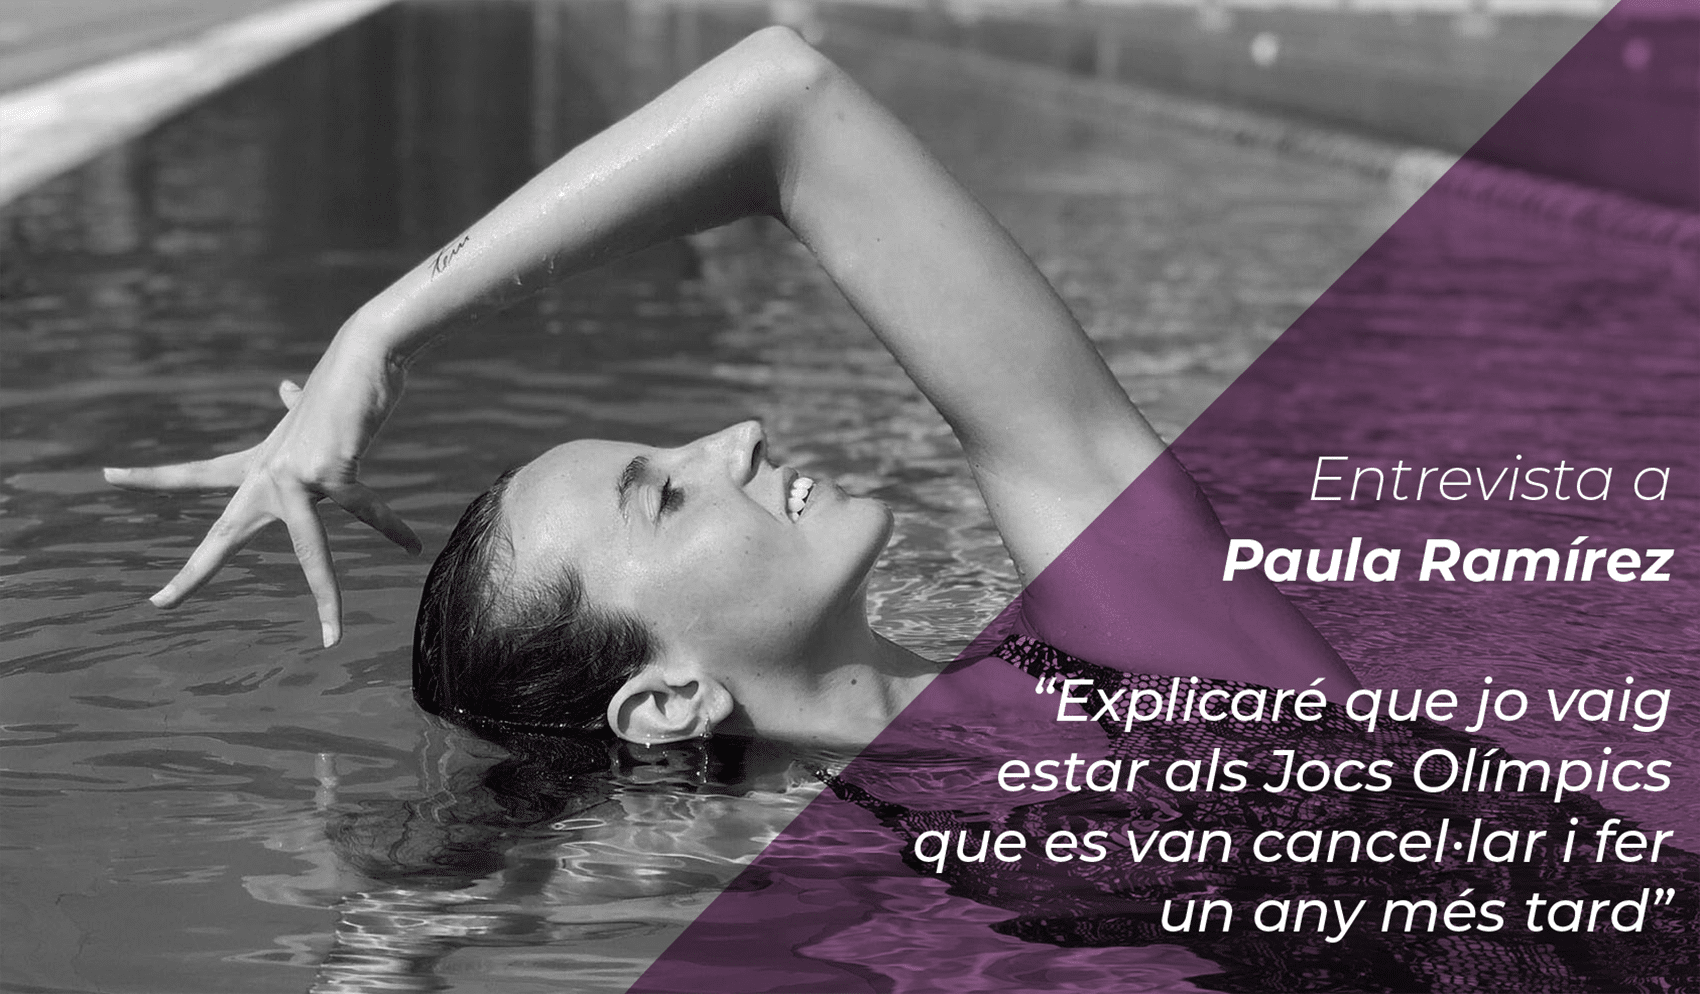 Paula Ramirez: “Explicaré que jo vaig estar als Jocs Olímpics que es van cancel·lar i fer un any més tard” 1